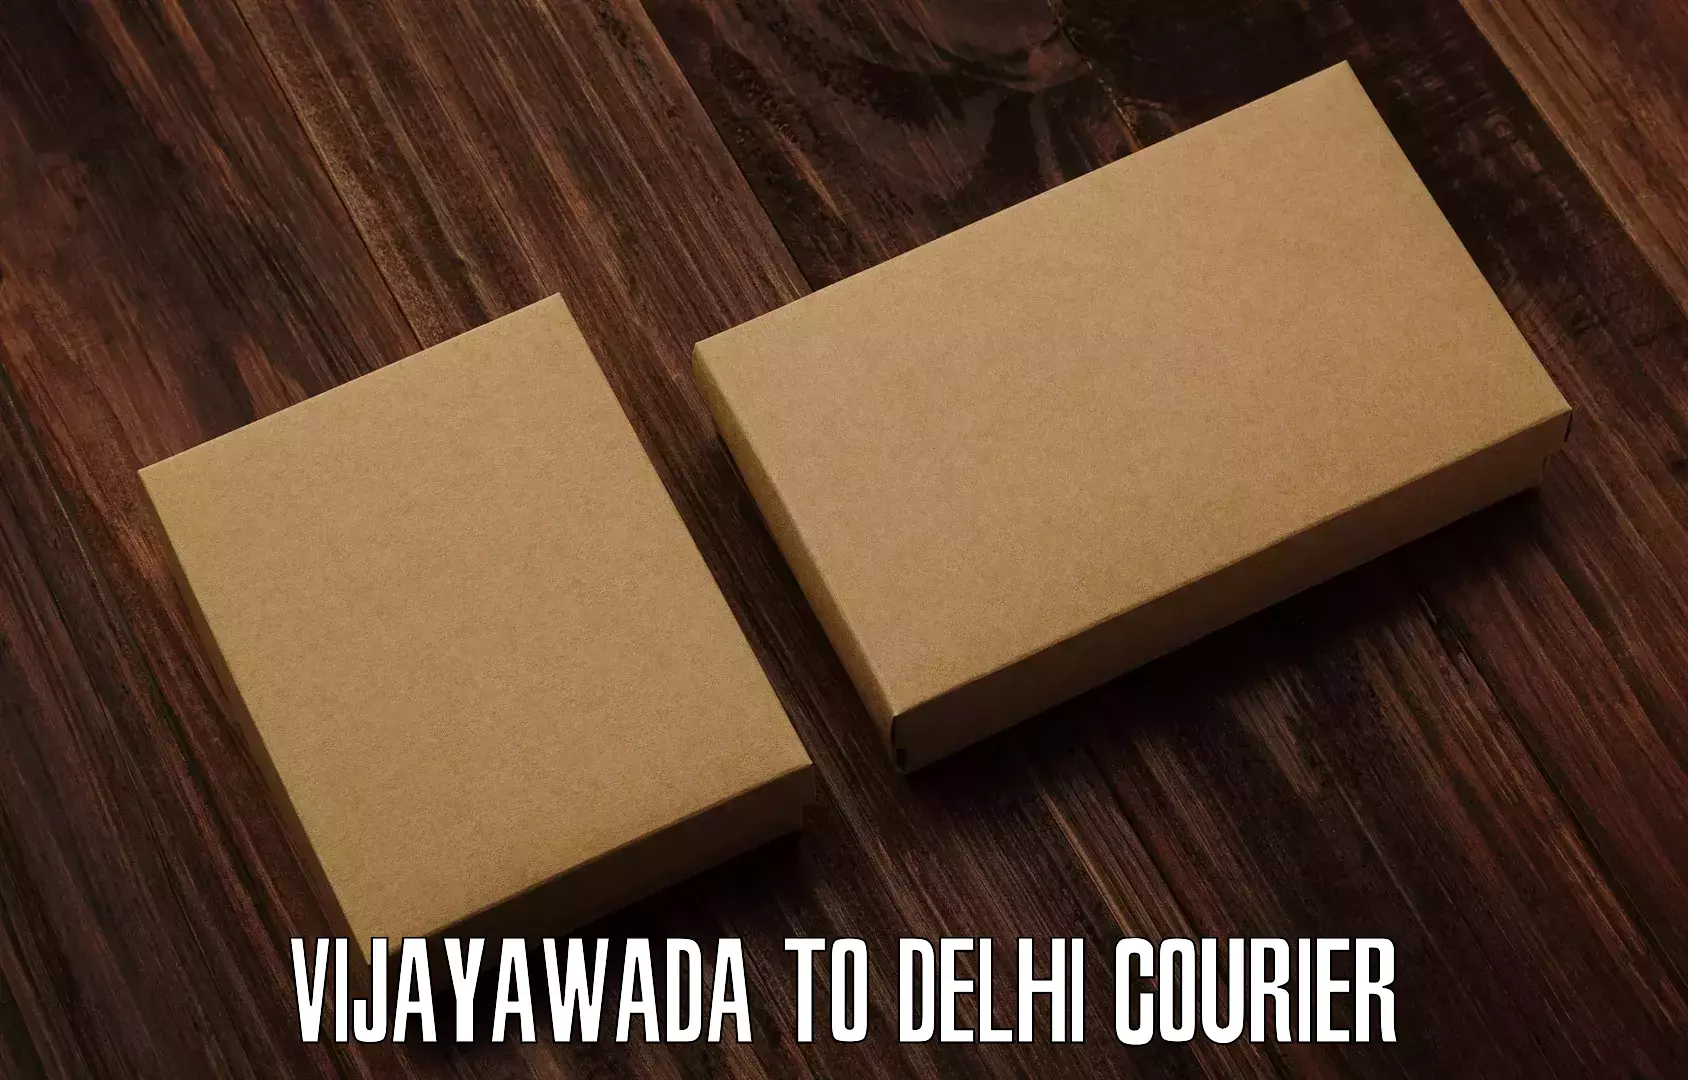 On-demand shipping options Vijayawada to NCR